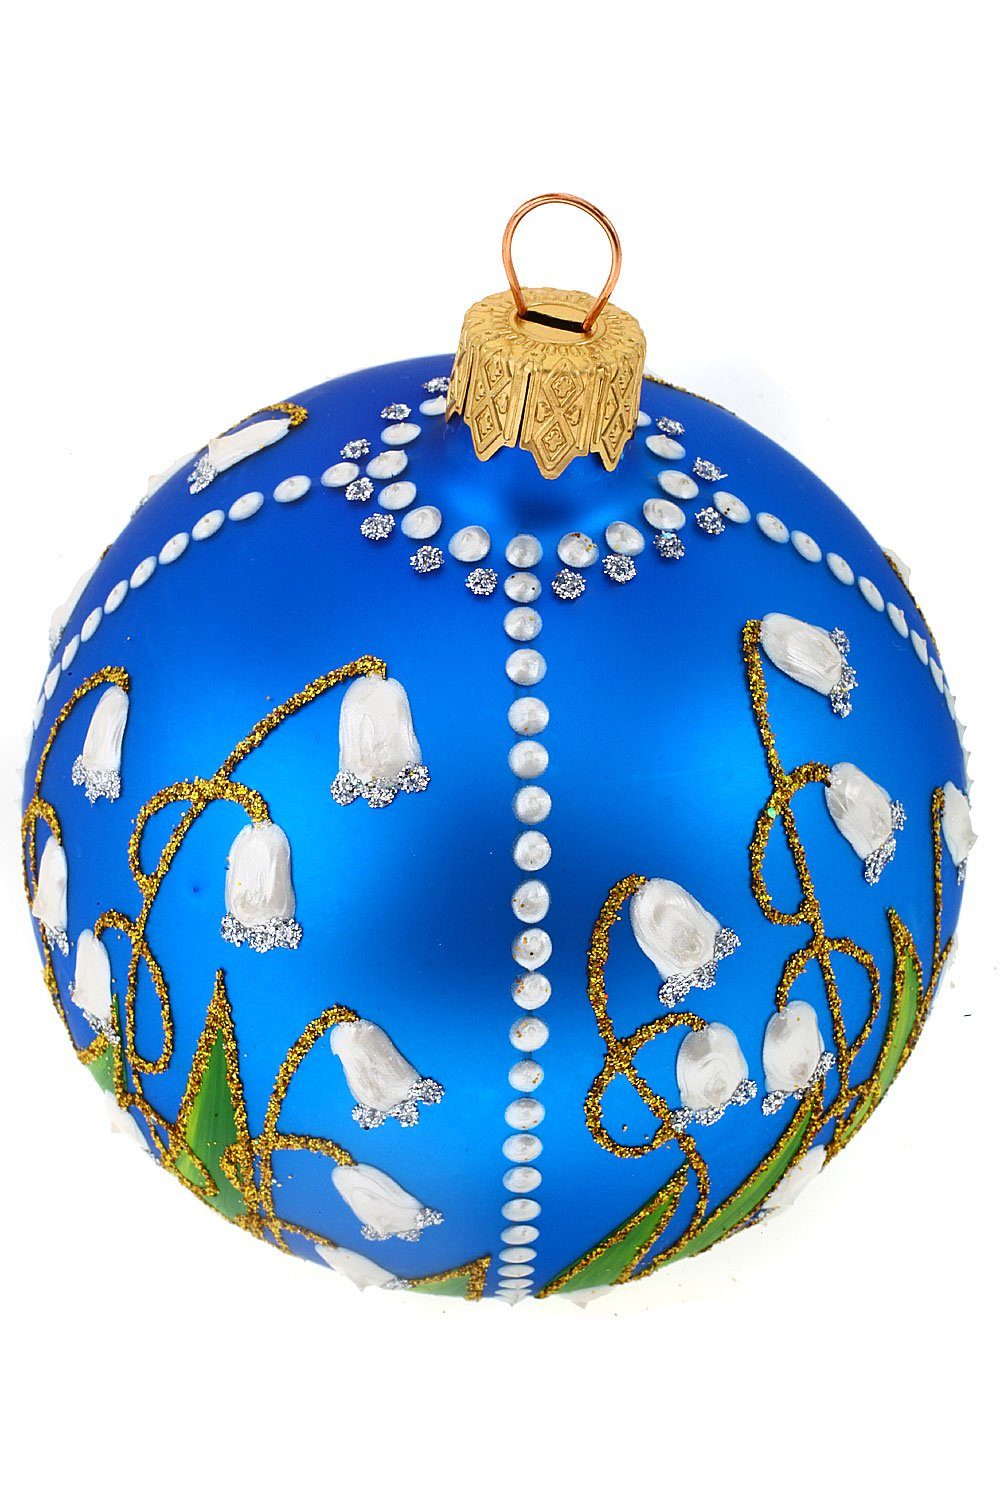 Weihnachtskontor mundgeblasen Weihnachtsbaumkugel handdekoriert mit Hamburger - Maiglöckchen Christbaumkugel blau,